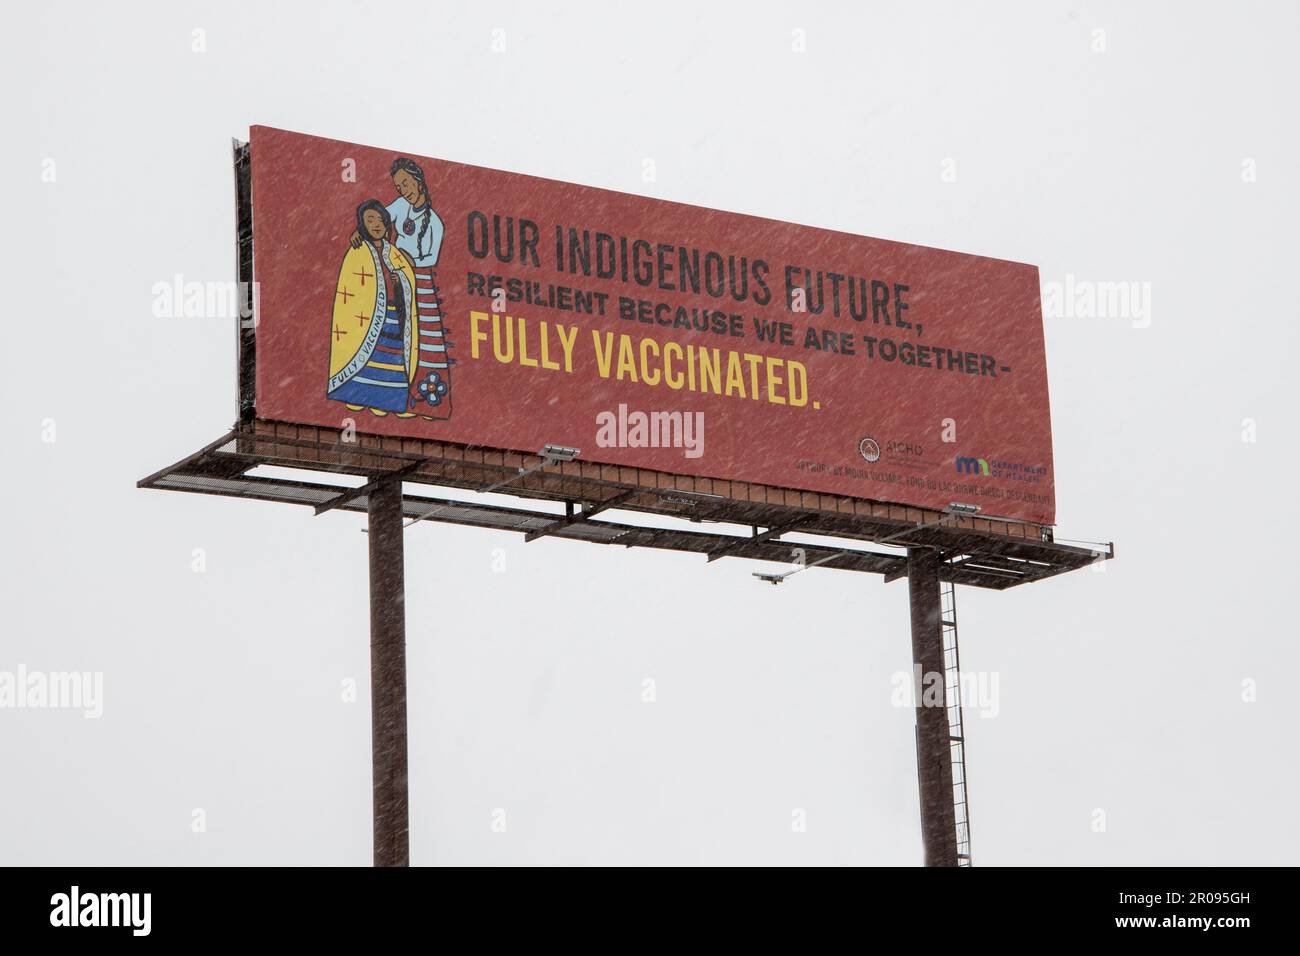 Hinkley, Minnesota. Werbetafeln, die die Zukunft der indigenen Bevölkerung anpreisen, weil sie vollständig gegen Covid geimpft sind. Stockfoto